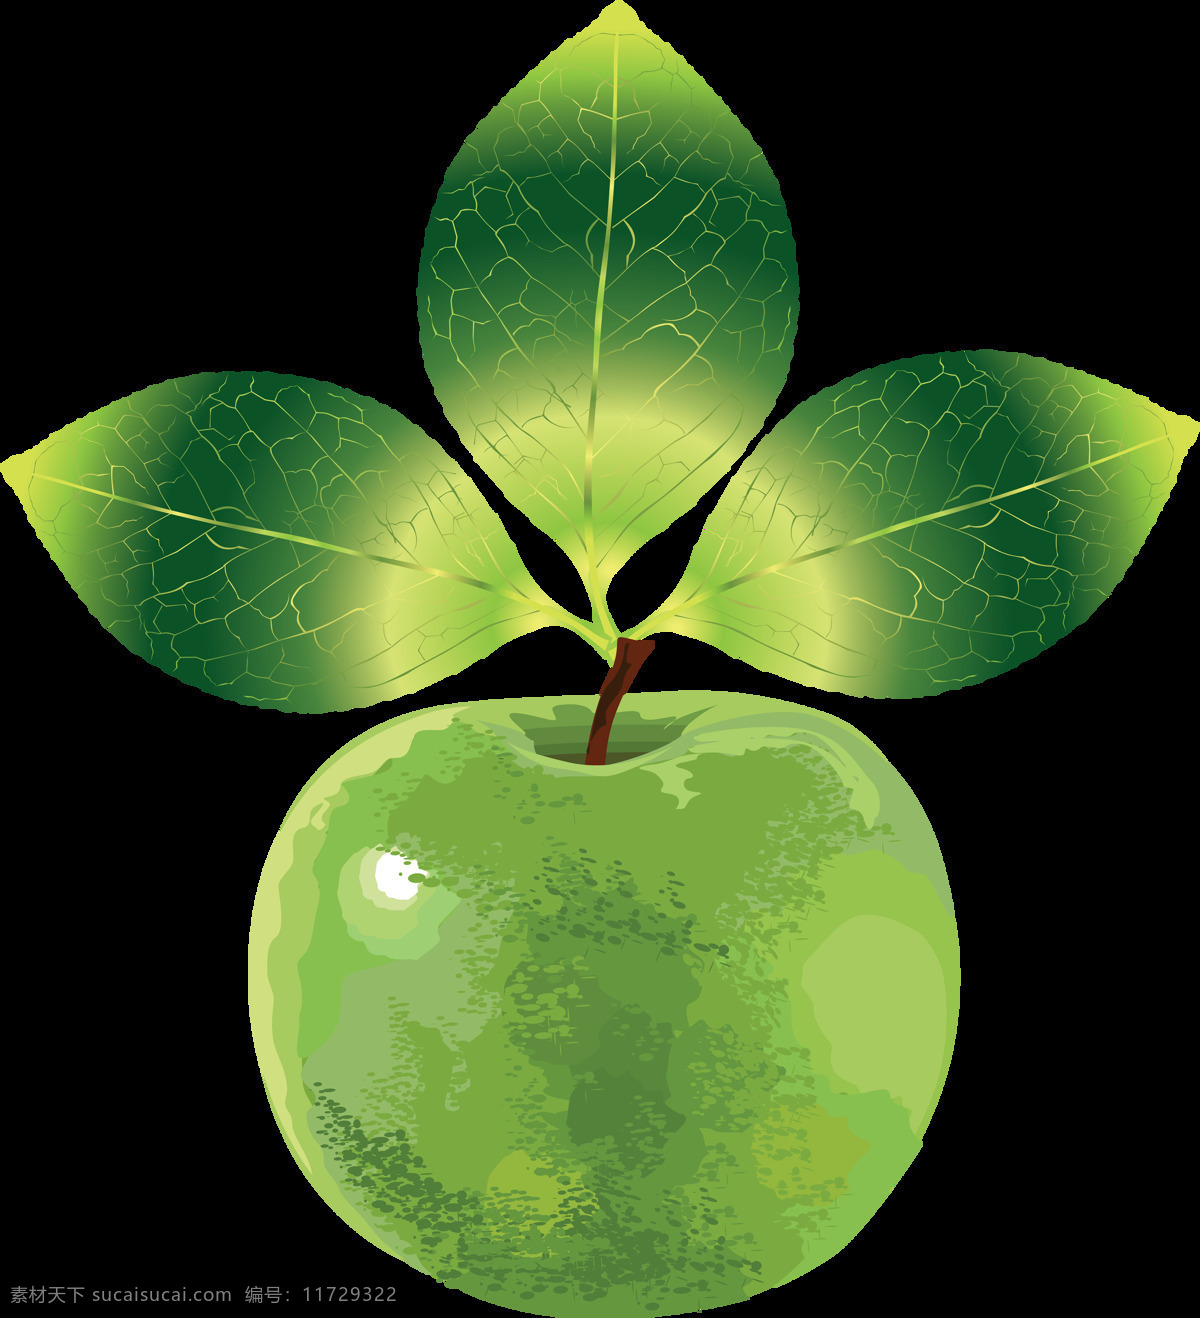 手绘 绿色 苹果 免 抠 透明 图 层 青苹果 苹果卡通图片 苹果logo 苹果简笔画 壁纸高清 大苹果 红苹果 苹果梨树 苹果商标 金毛苹果 青苹果榨汁